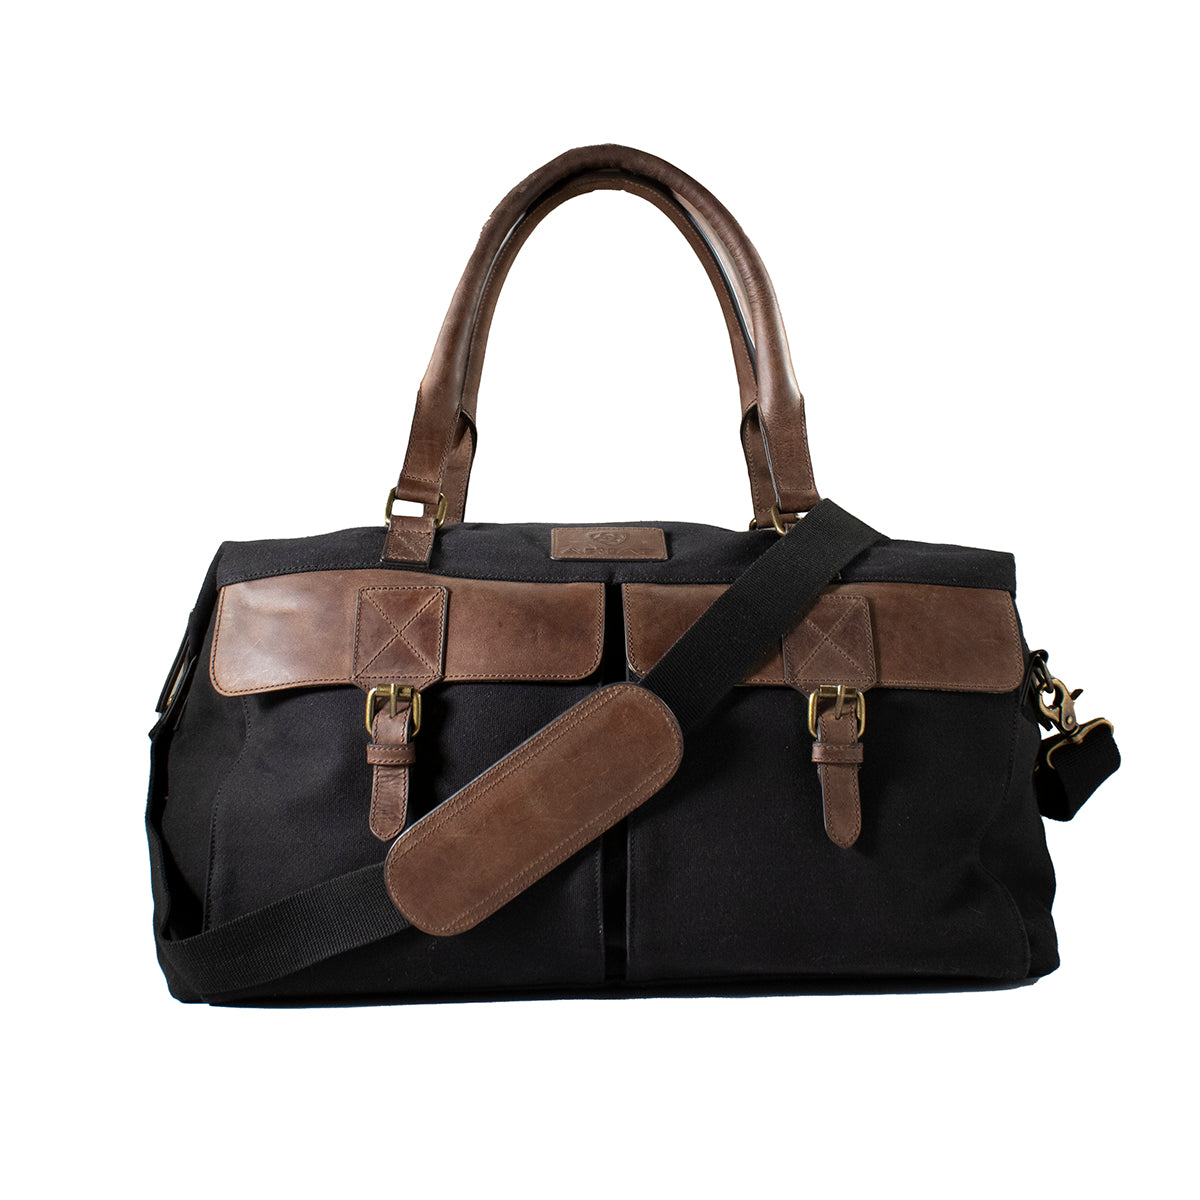 Ariat Men's Gear Duffle Bag - Black/Brown